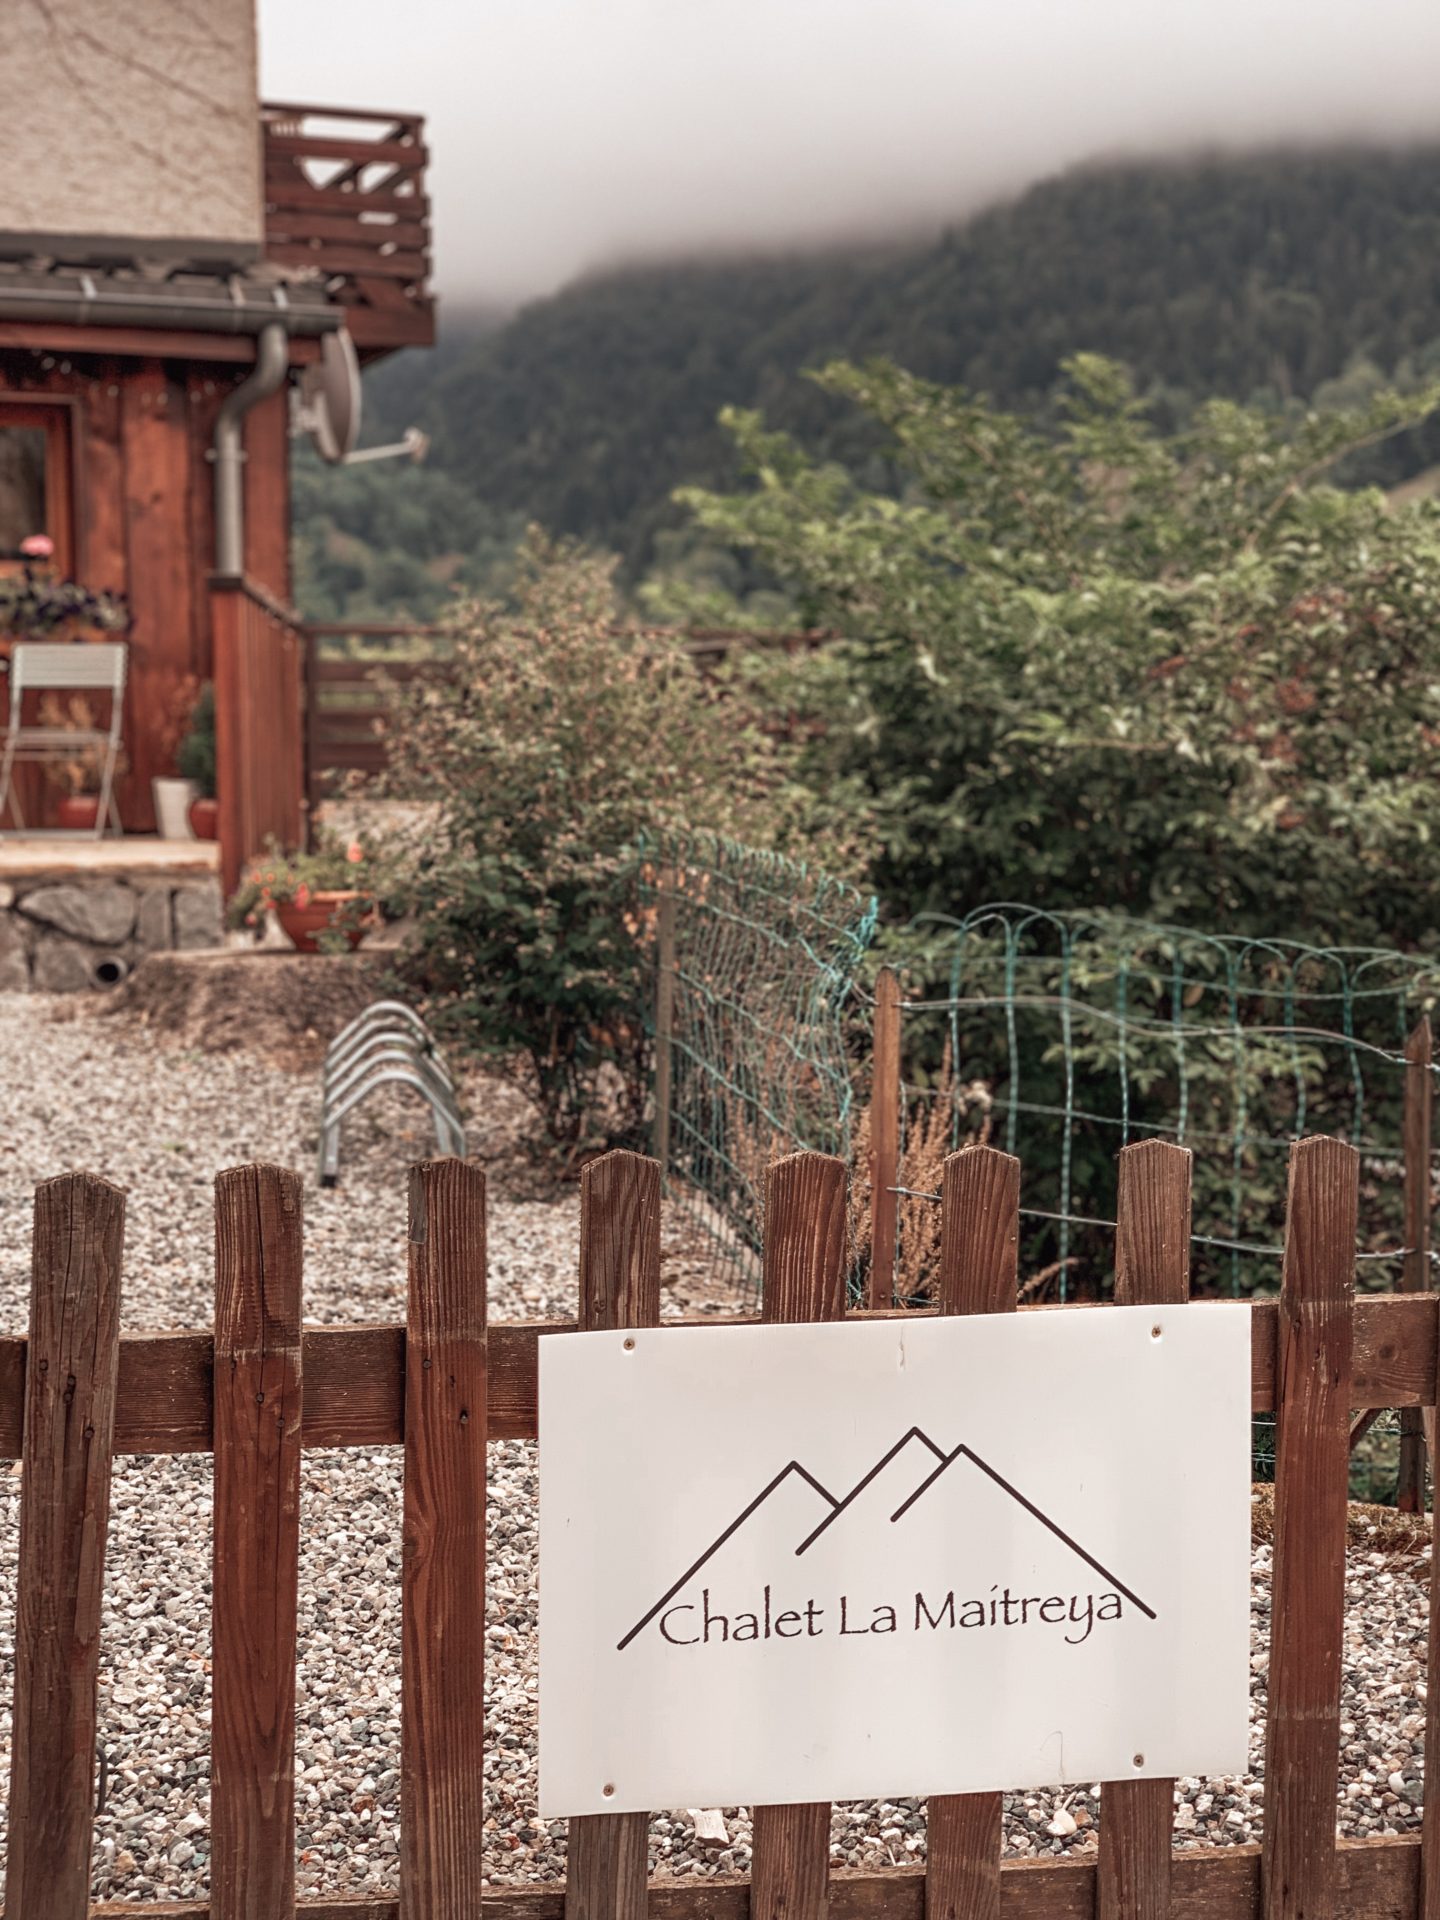 Chalet La Maitreya, France, Vaujany Holiday in the Alps